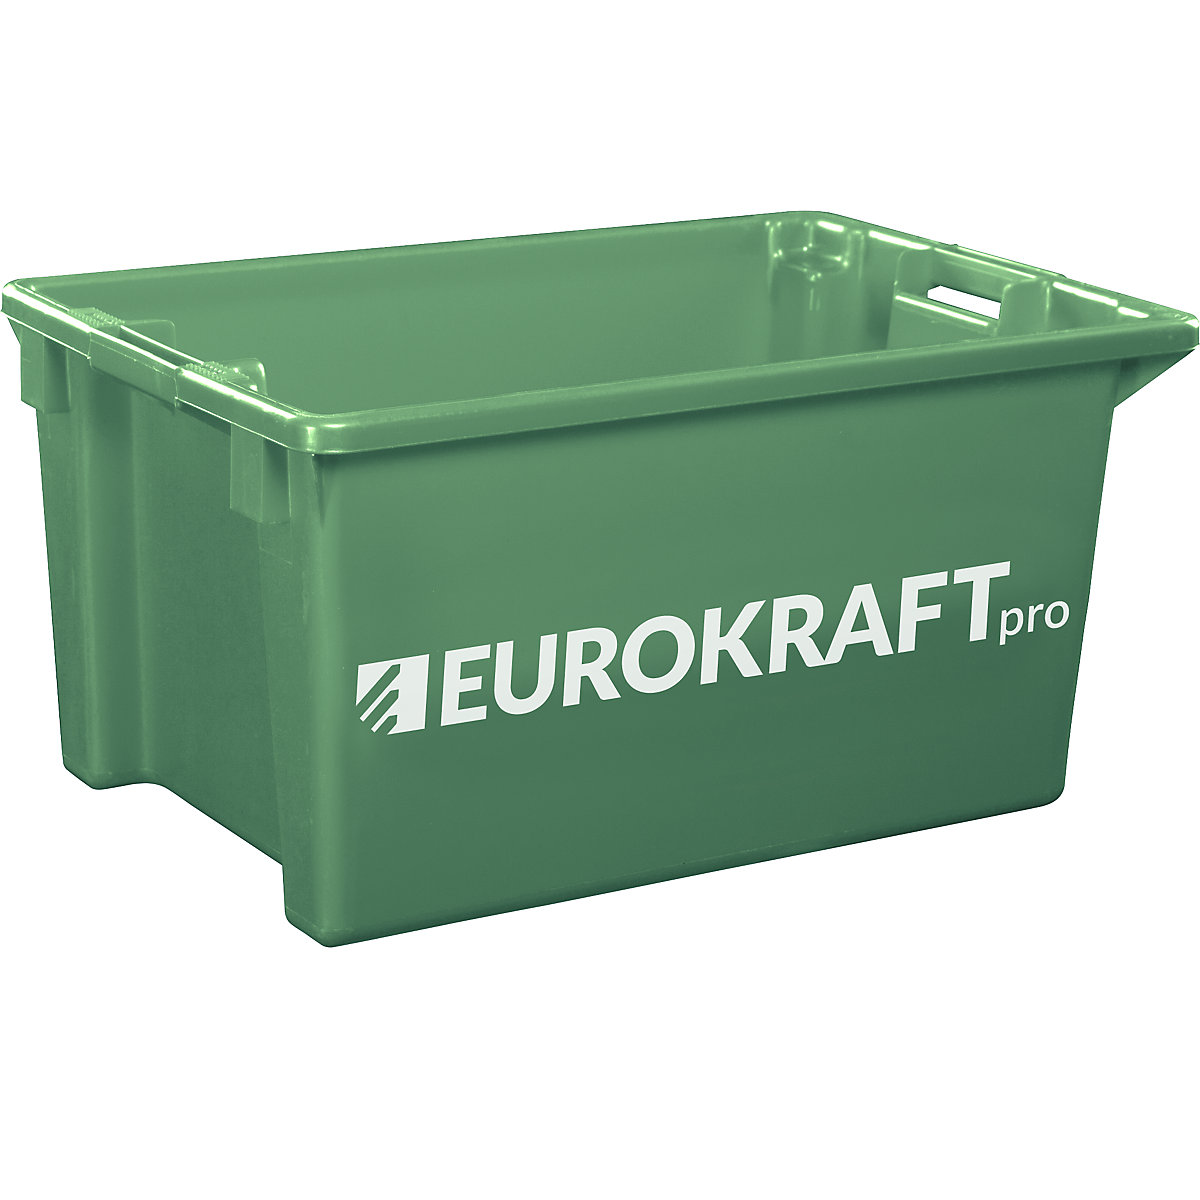 EUROKRAFTpro – Obrotowy pojemnik do ustawiania w stos z polipropylenu dopuszczonego do kontaktu z żywnością, poj. 70 l, opak. 2 szt., ścianki i dno zamknięte, zielone